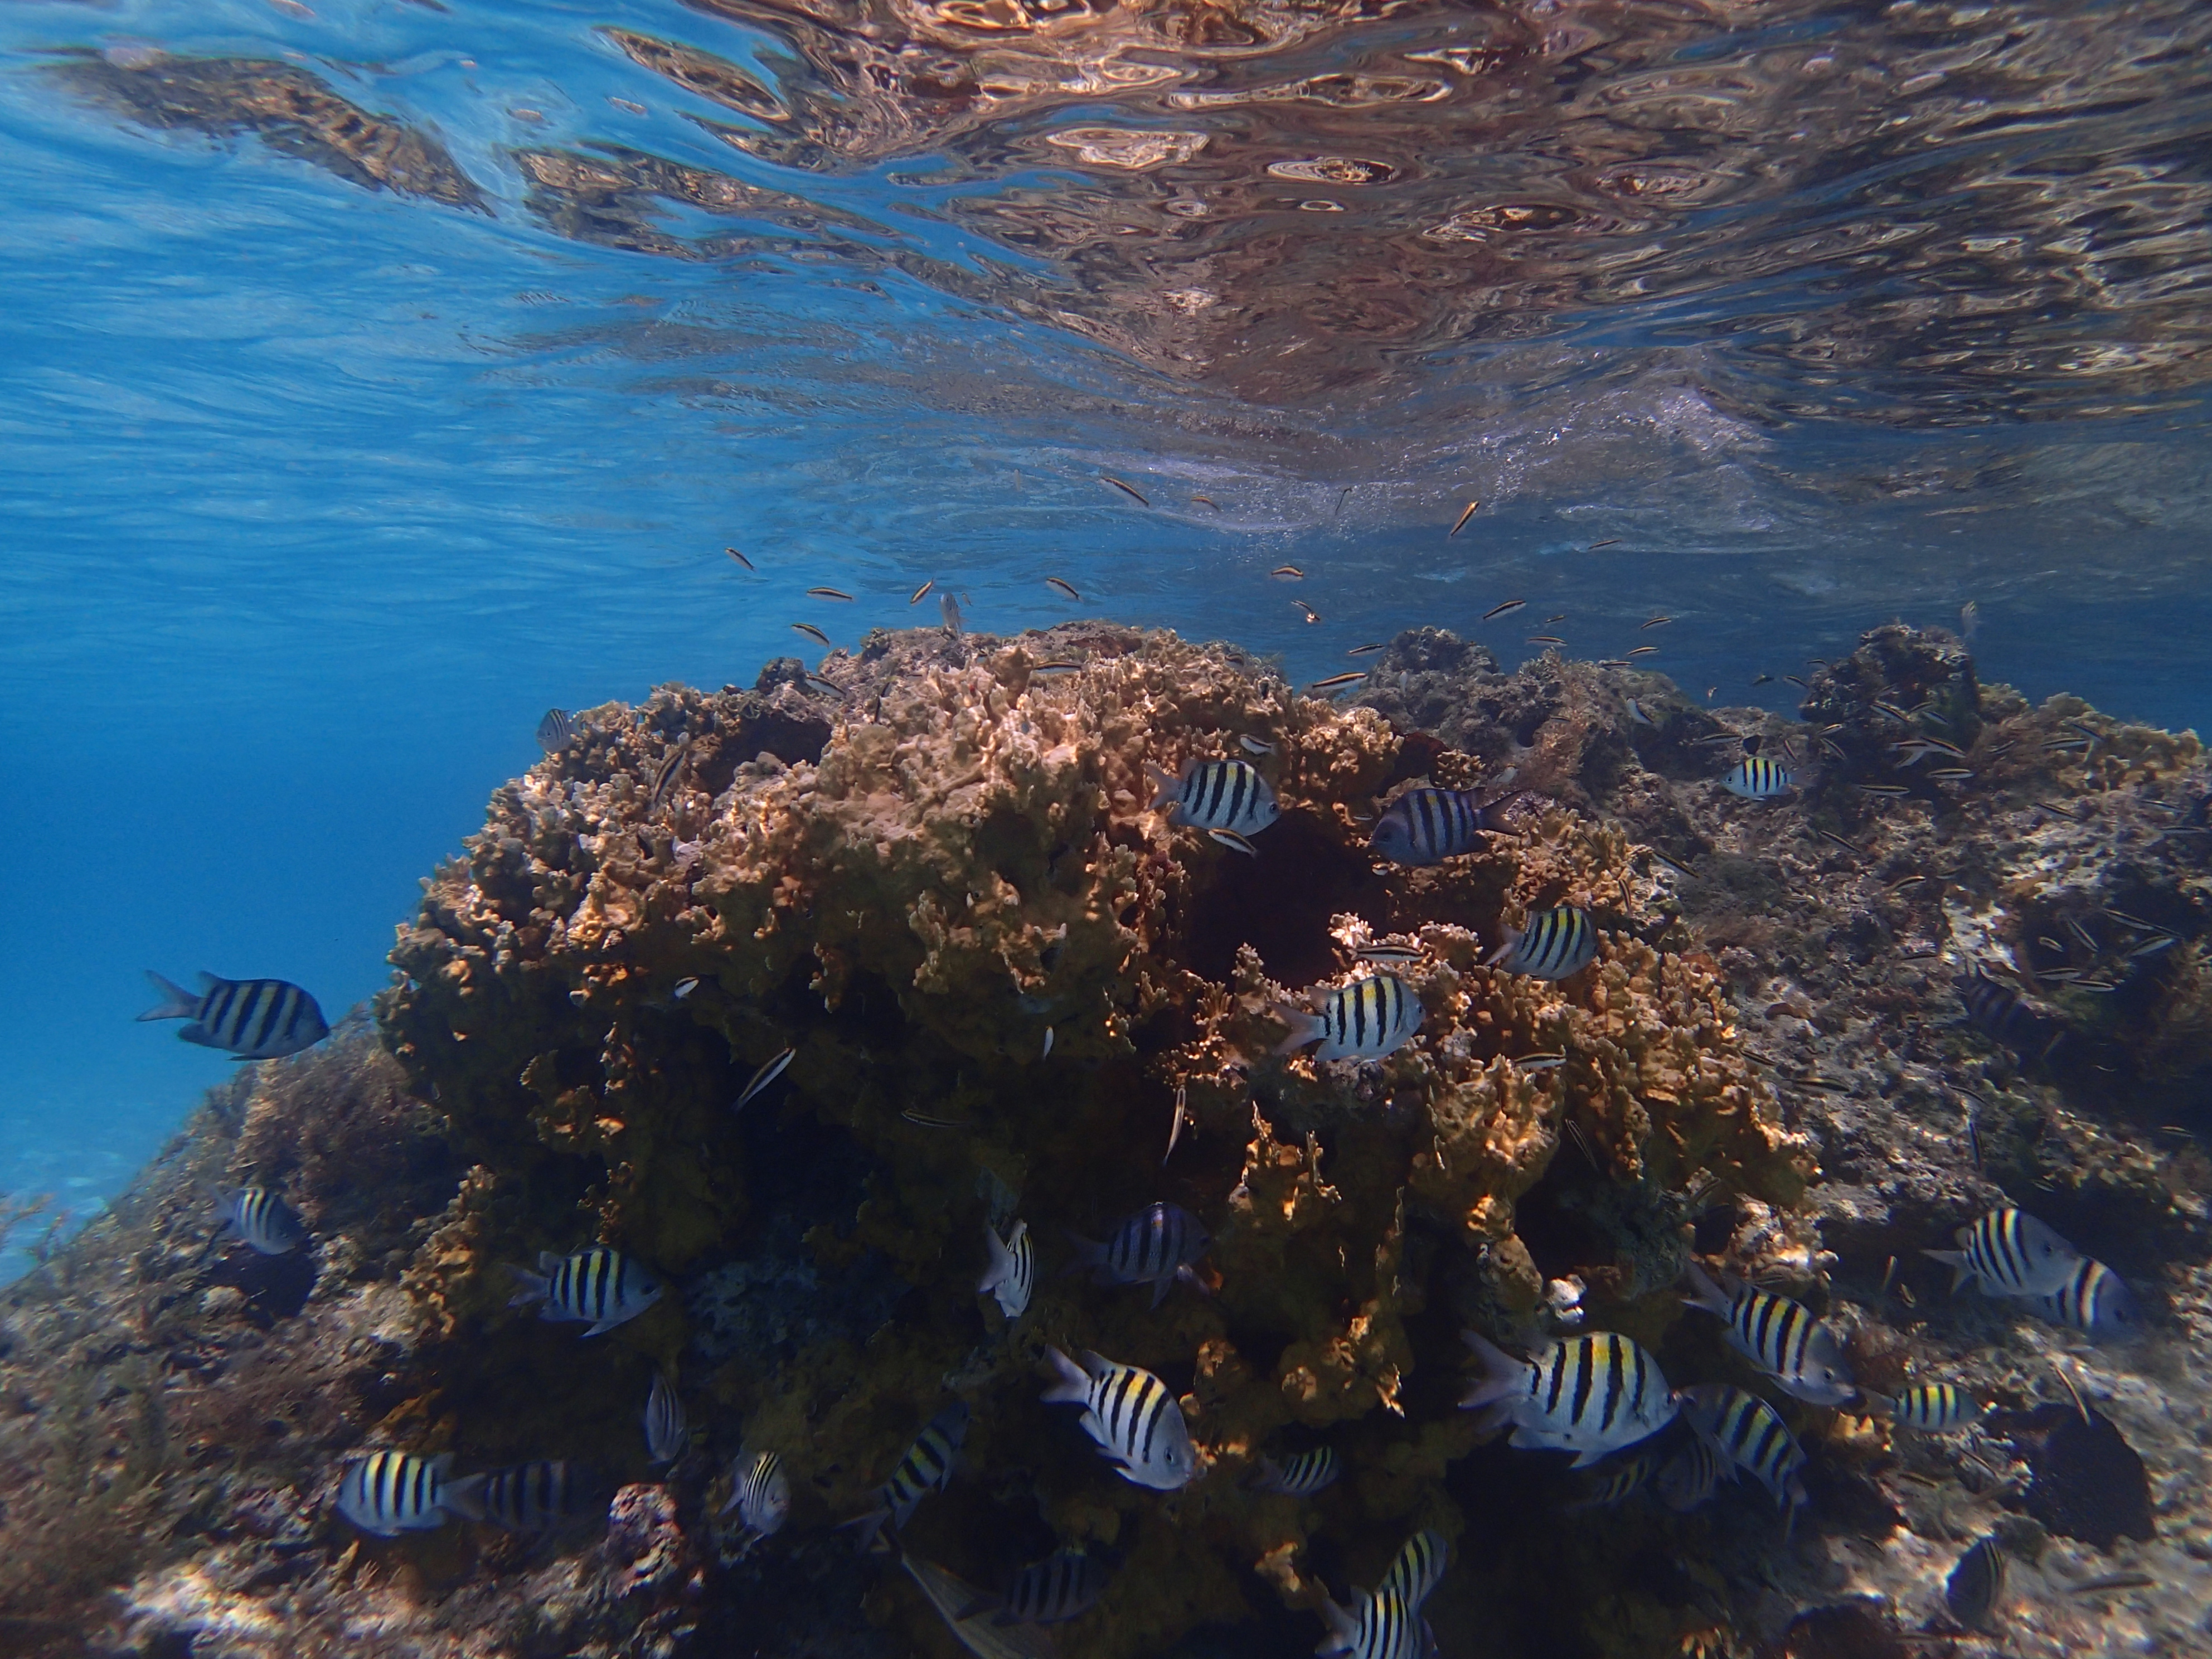 Bahamas coral reefs